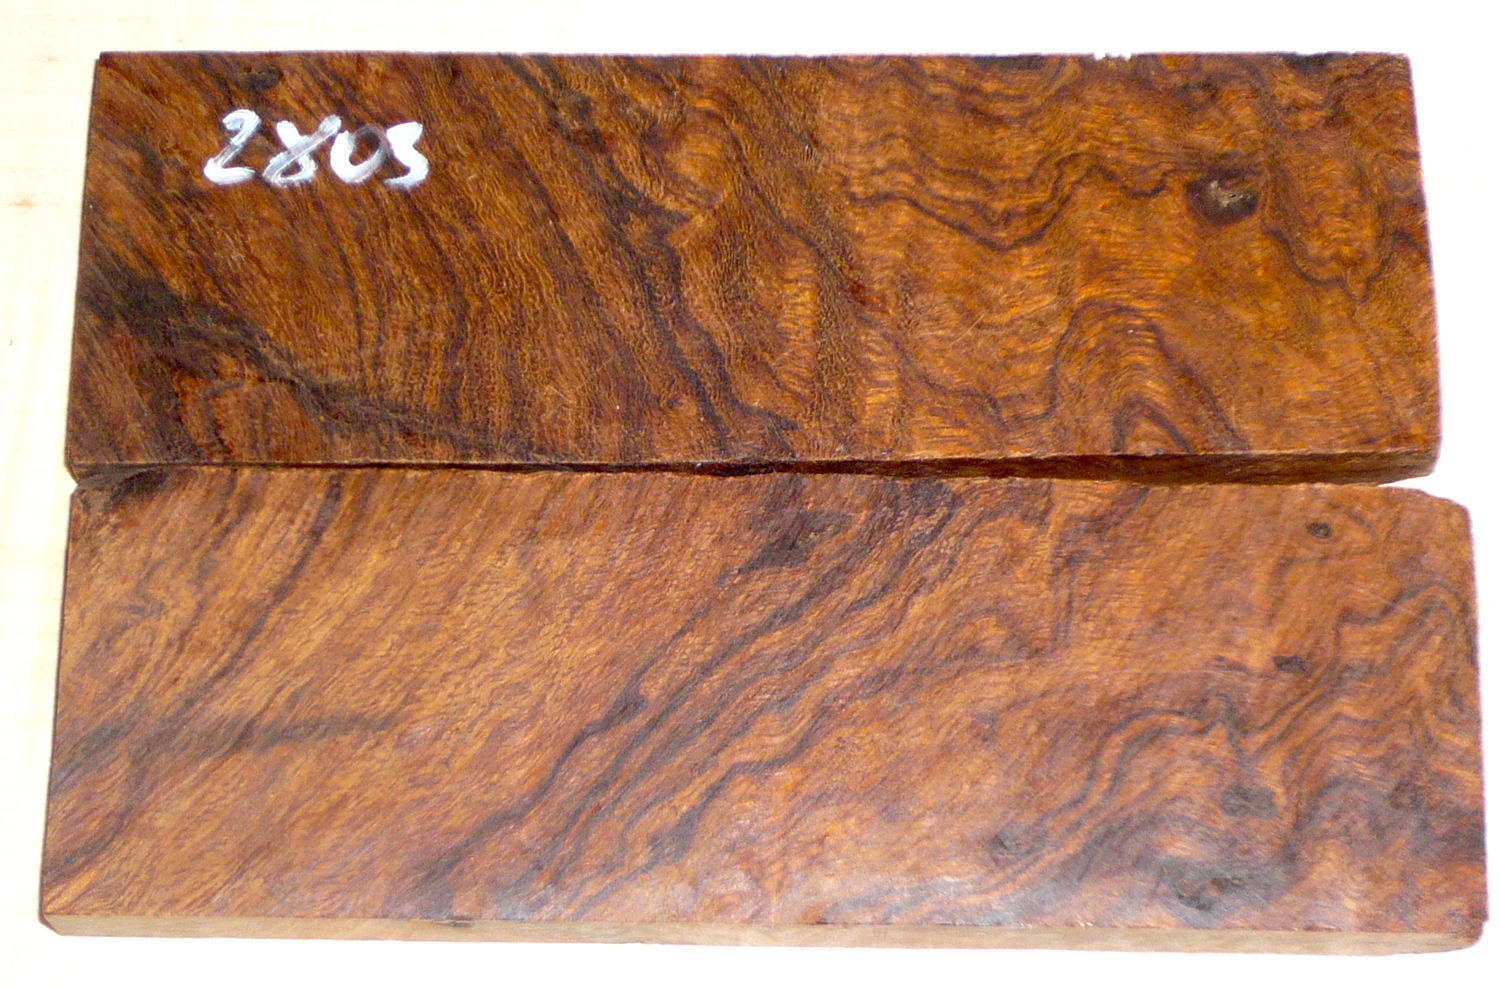 2803 Wüsteneisenholz Maser Griffschalen 134 x 45 x 8 mm